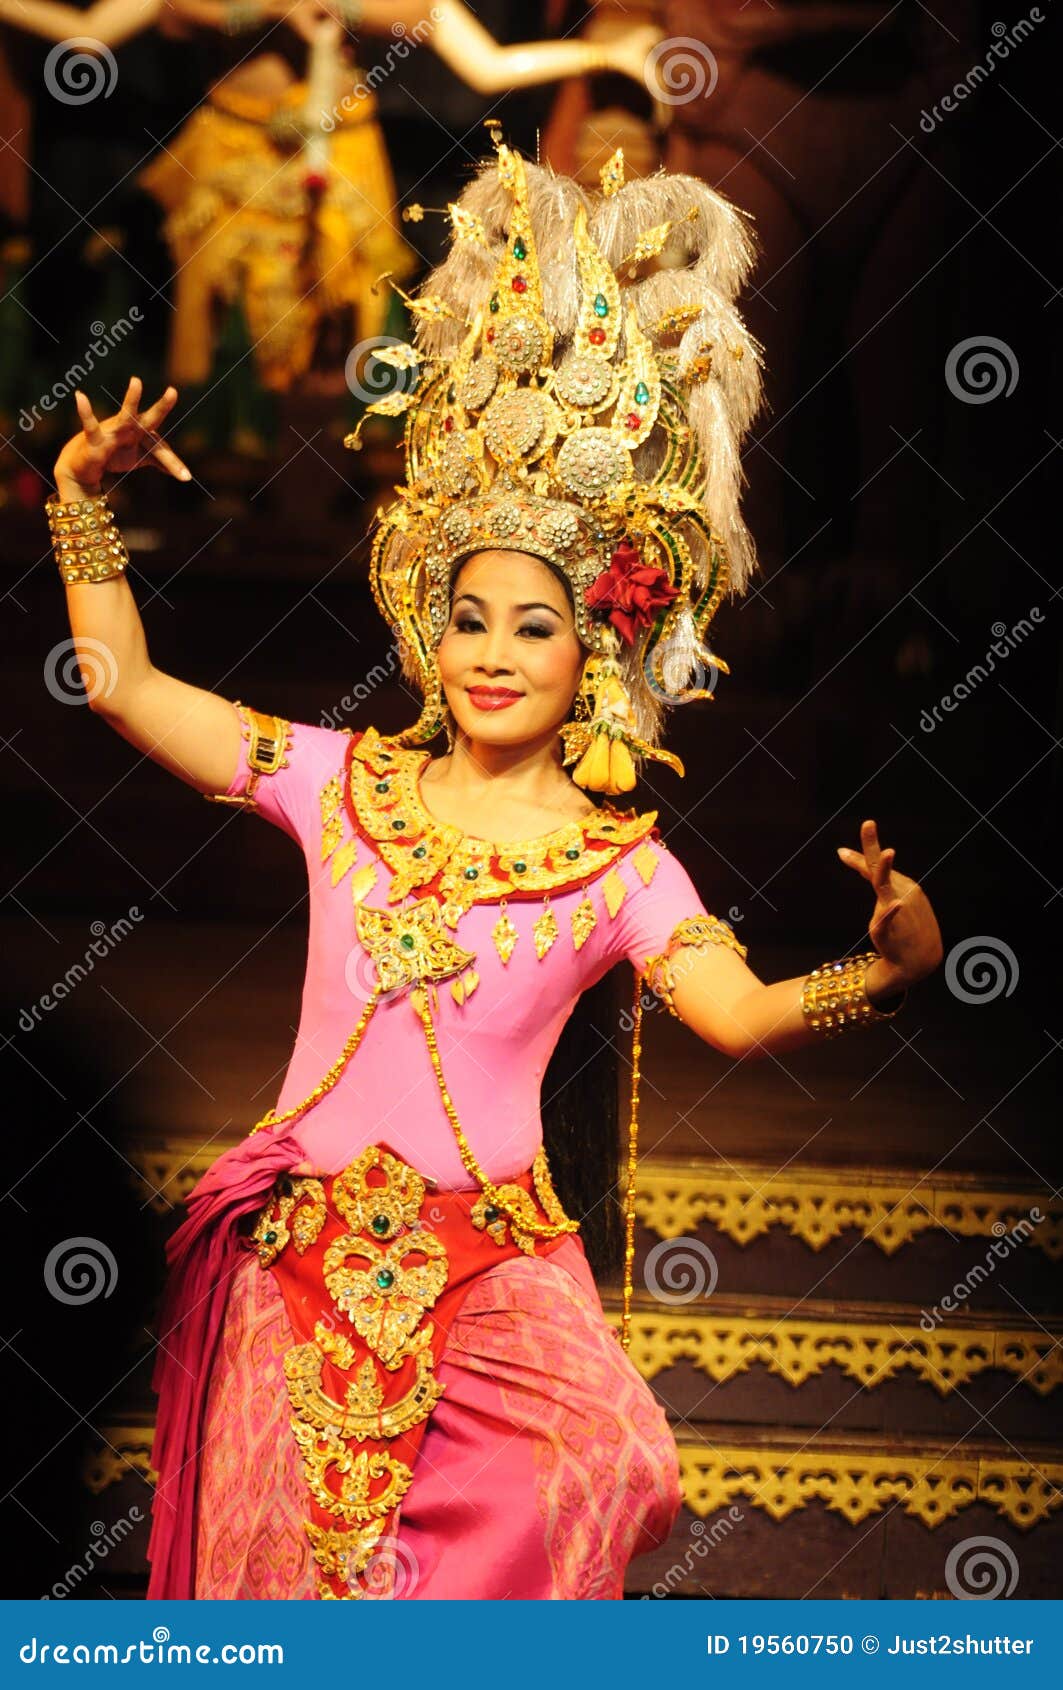 thai-dance-culture-19560750.jpg